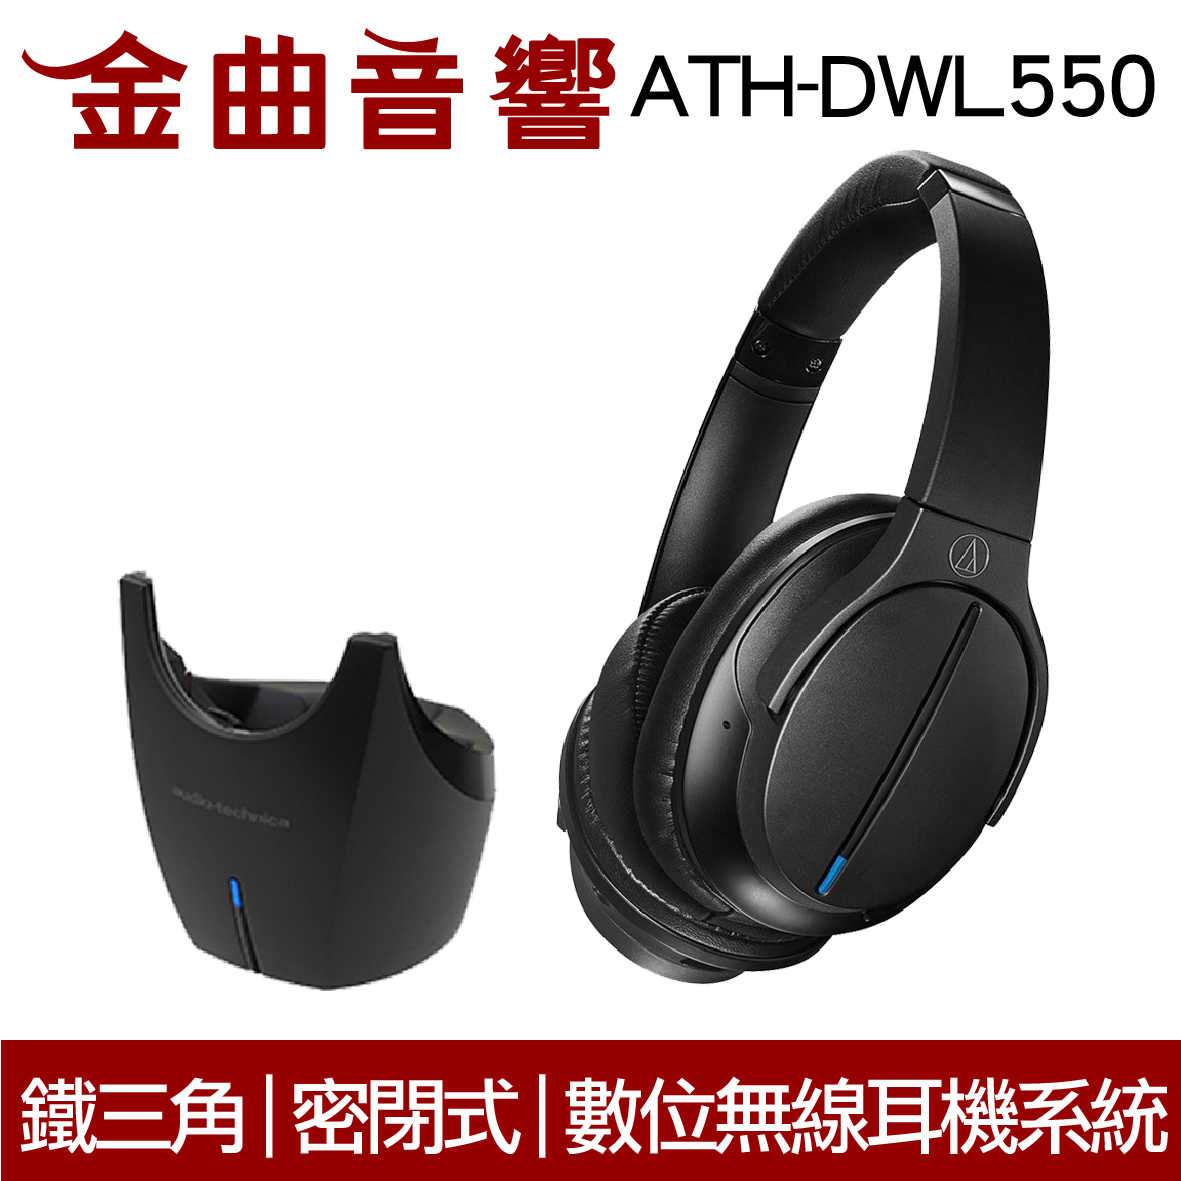 鐵三角 ATH-DWL550 無線 2.4G傳輸 耳罩式耳機 | 金曲音響